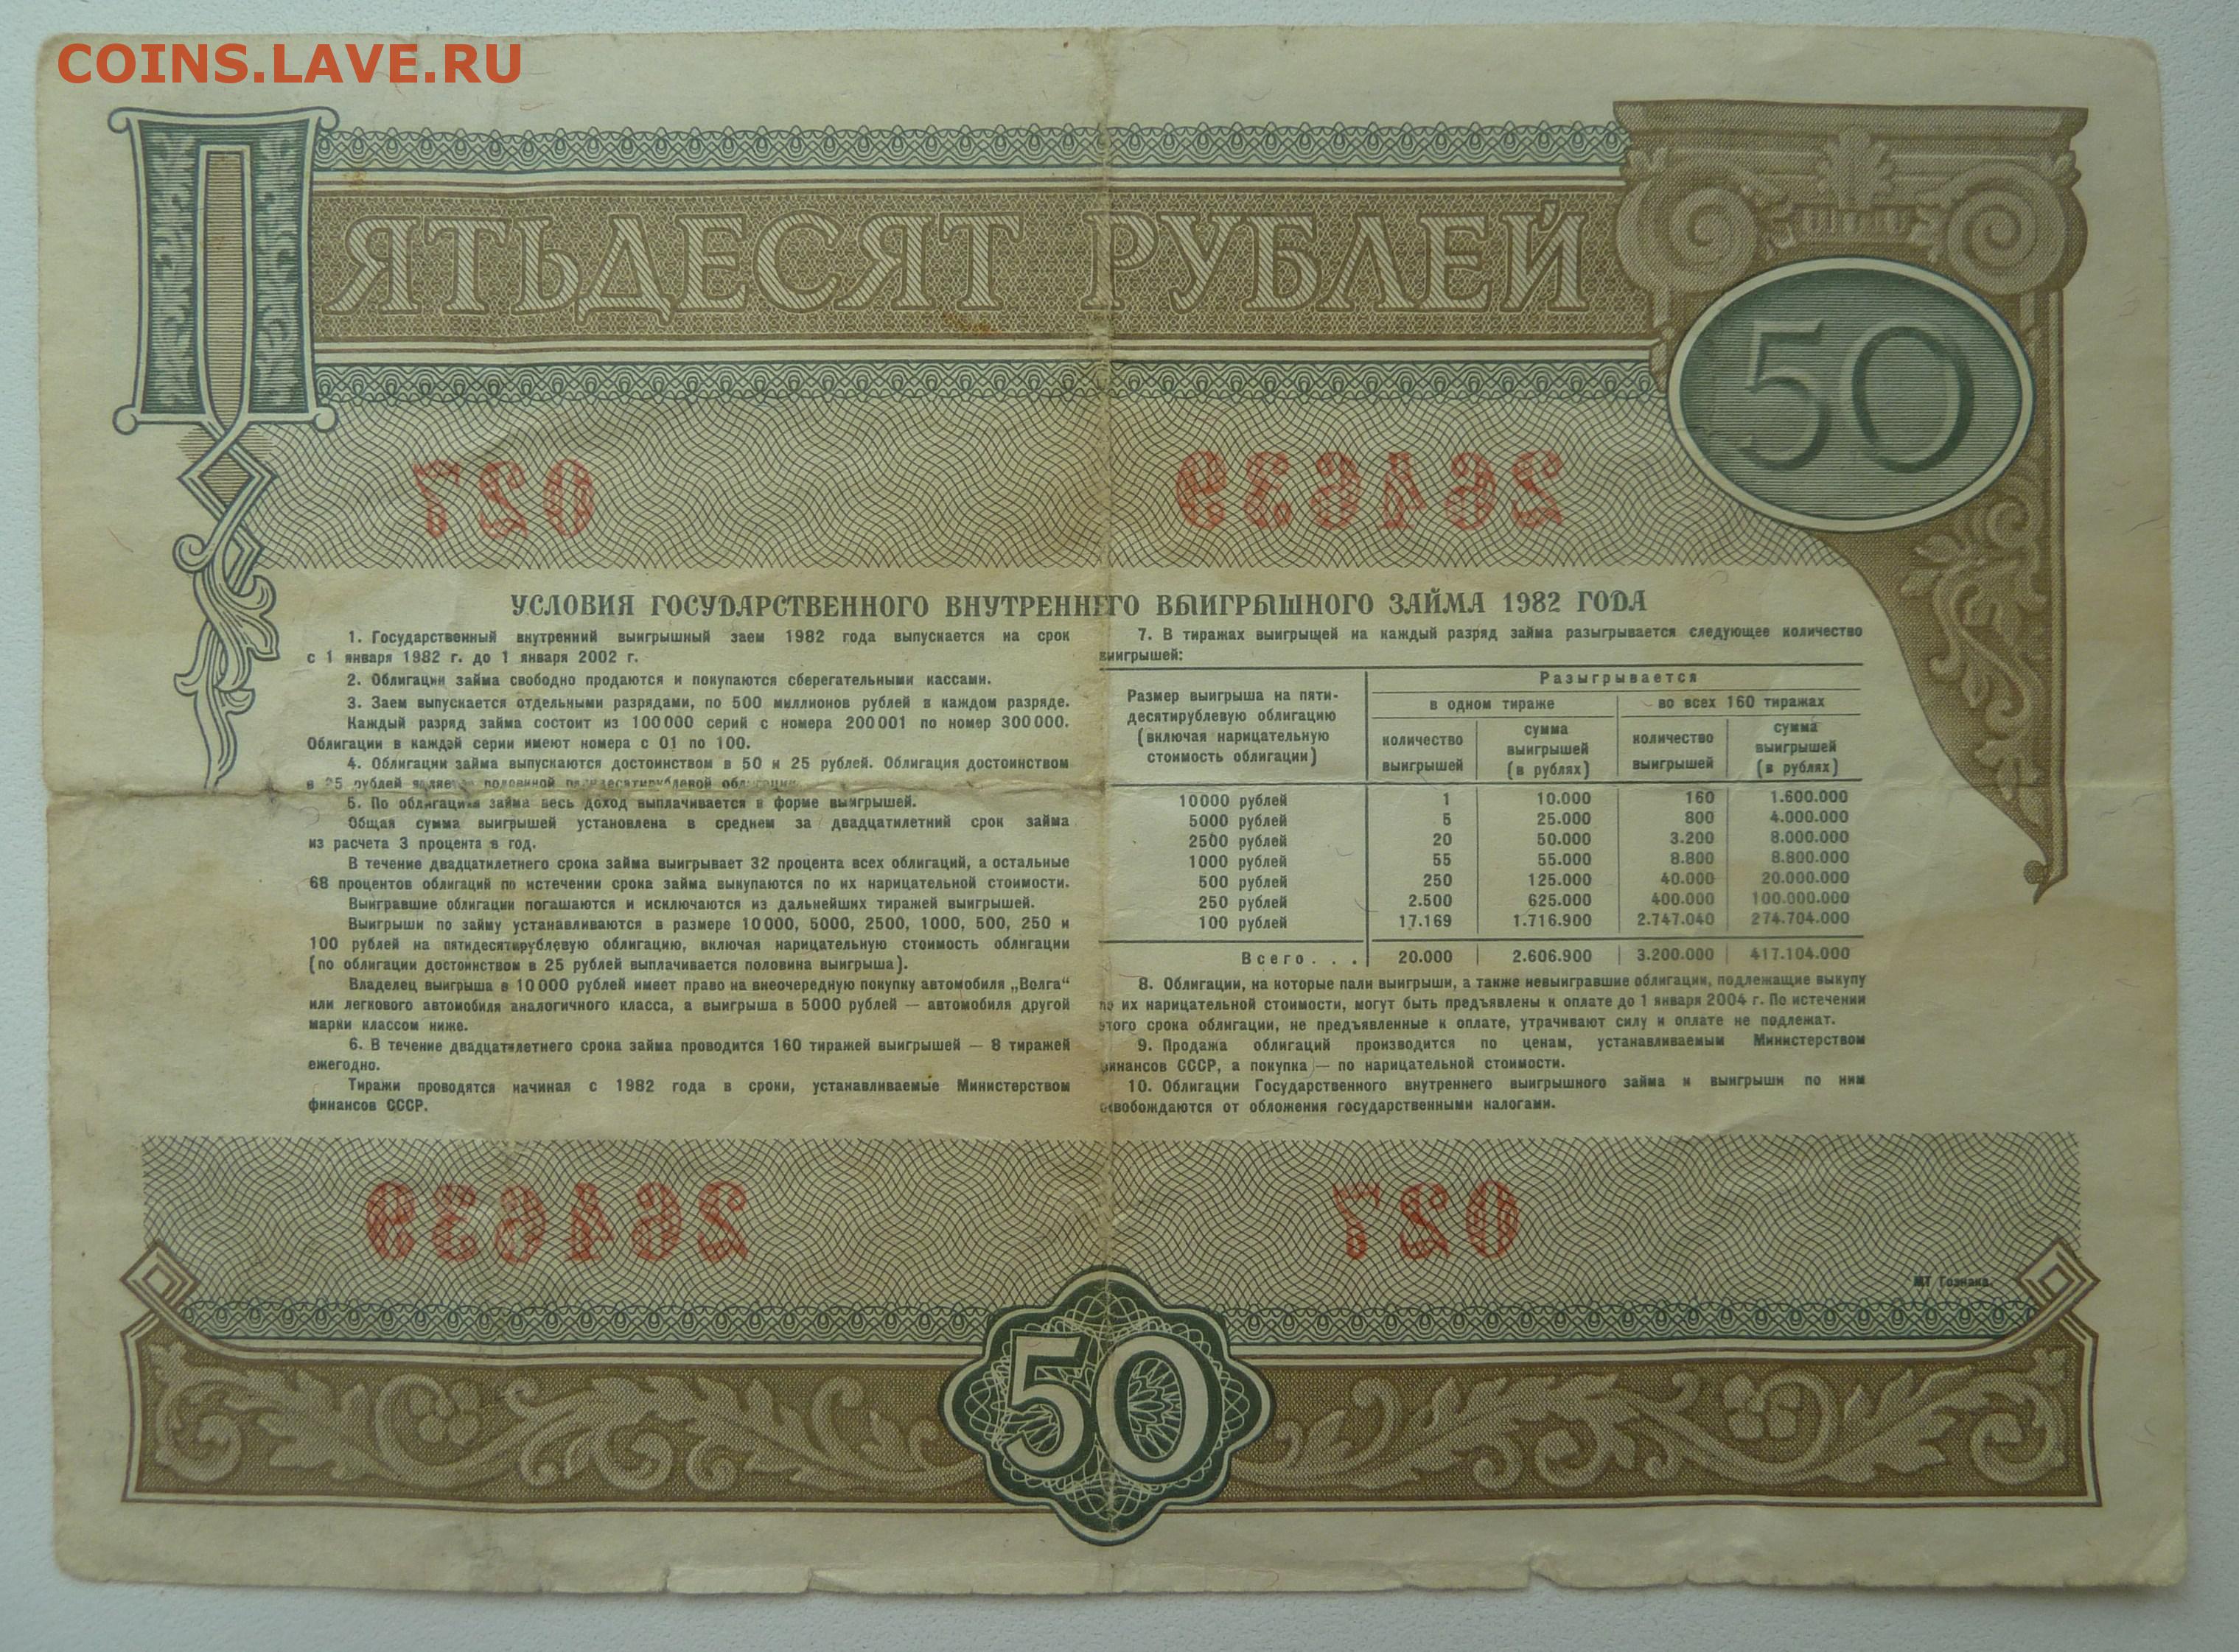 Государственный заем 1982 года. 50р 1982 облигация. Облигации 1982 года. Облигация на сумму 50 рублей 1982 года. Государственный внутренний выигрышный заем 1982 года.